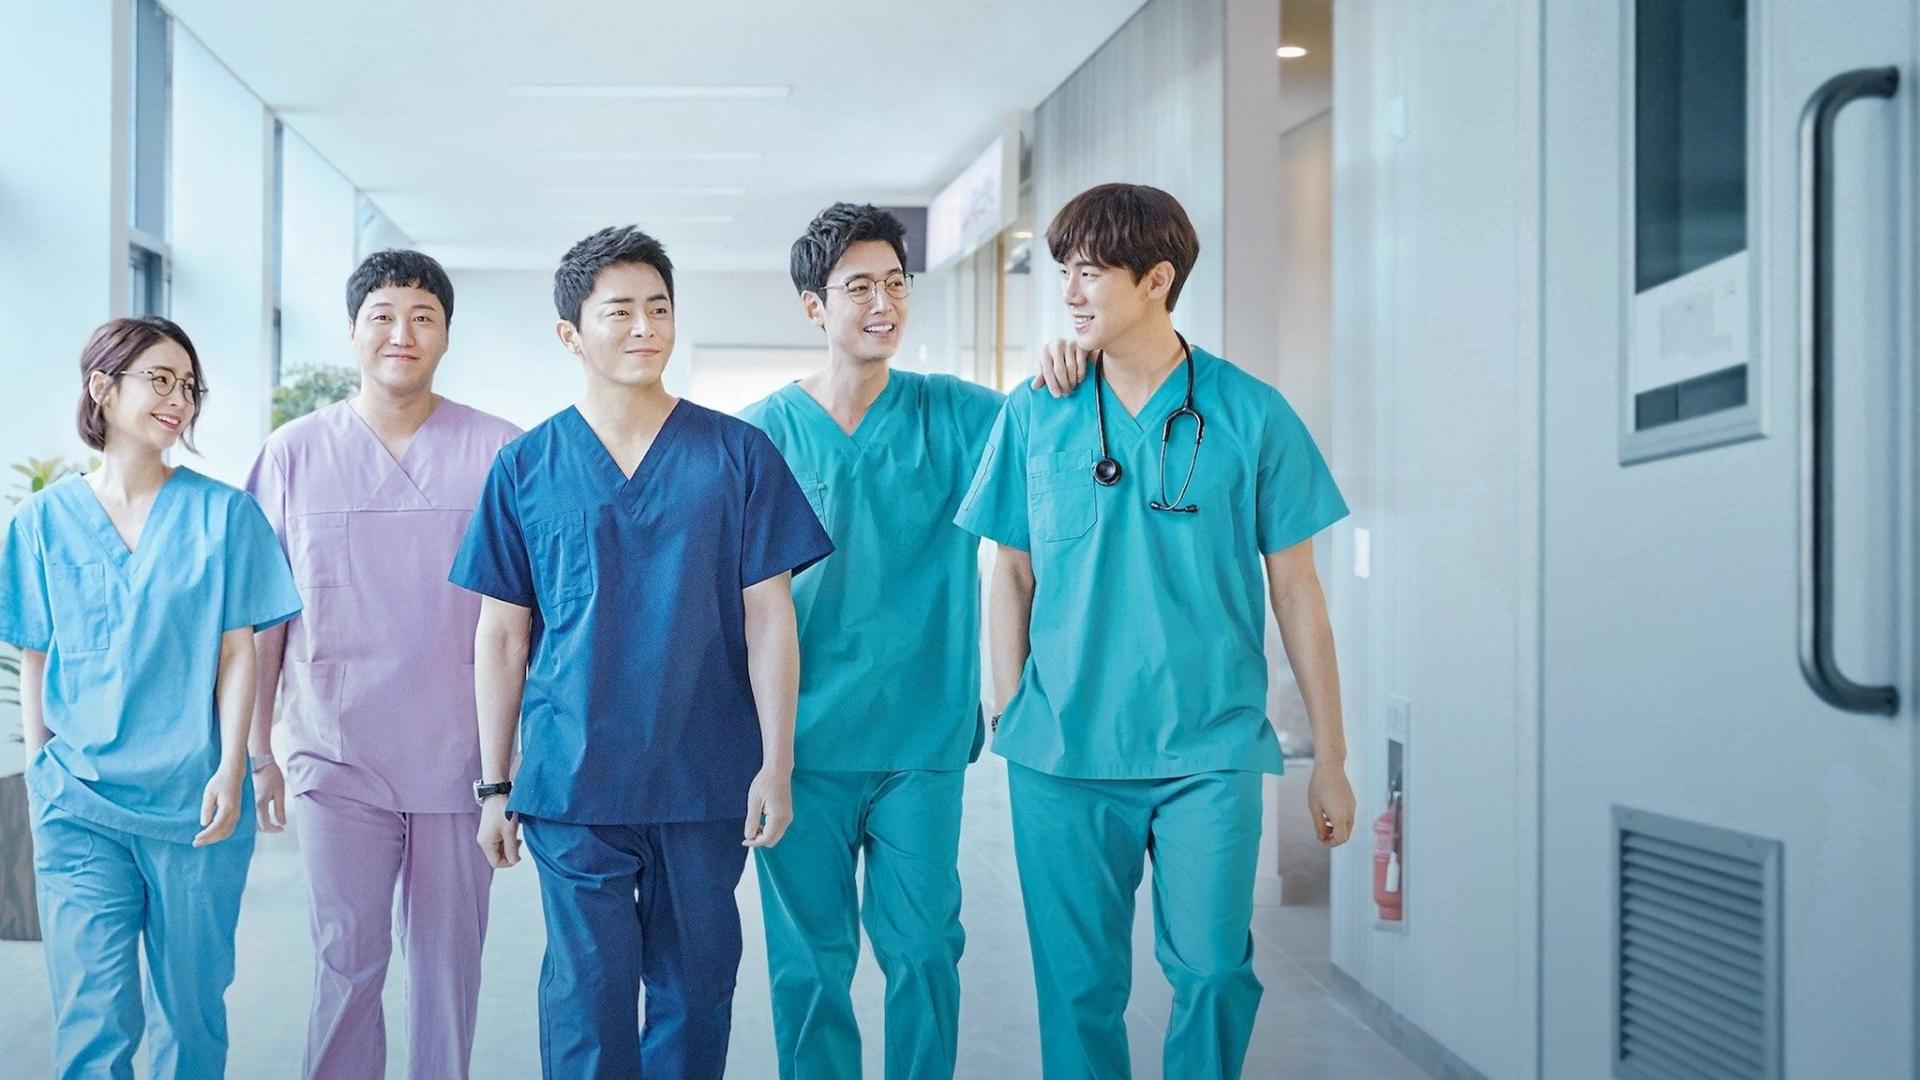 دانلود سریال کره ای Hospital Playlist